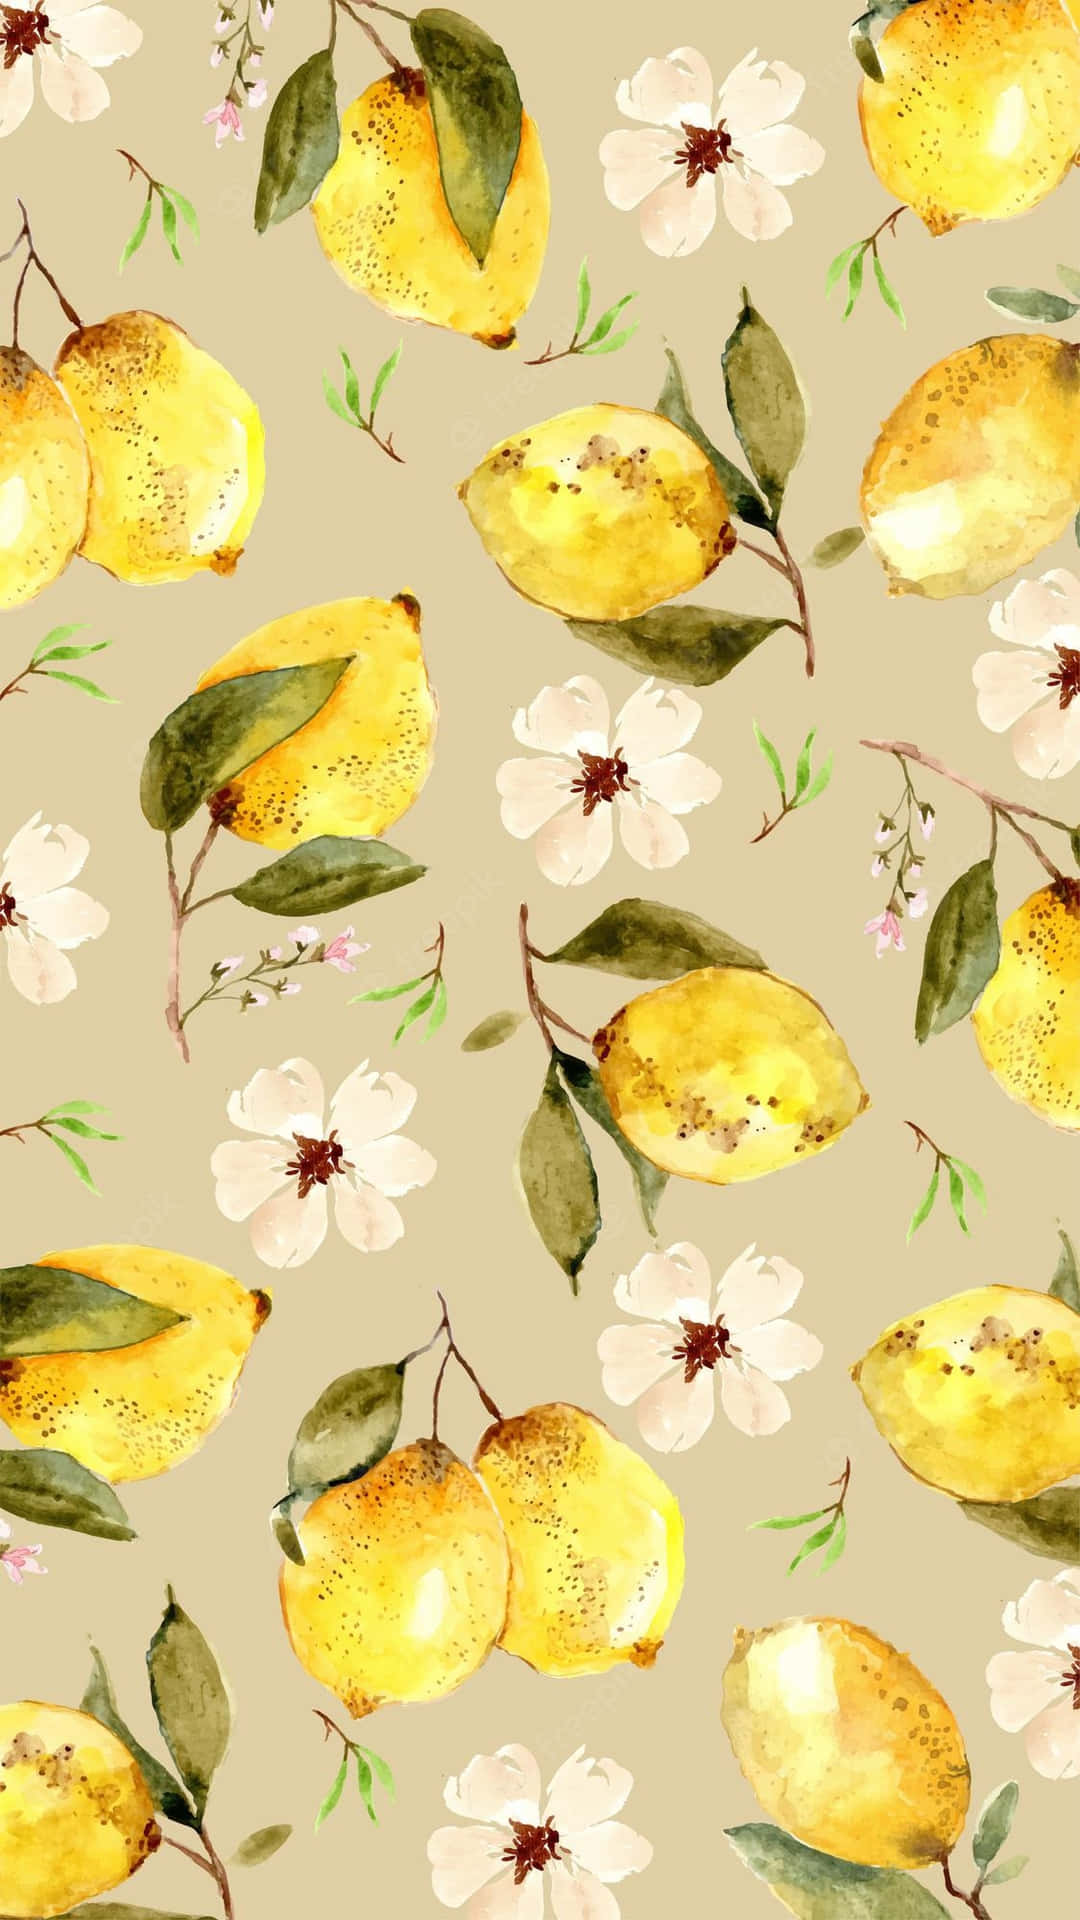 Ettakvarellmönster Av Citroner Och Blommor. Wallpaper